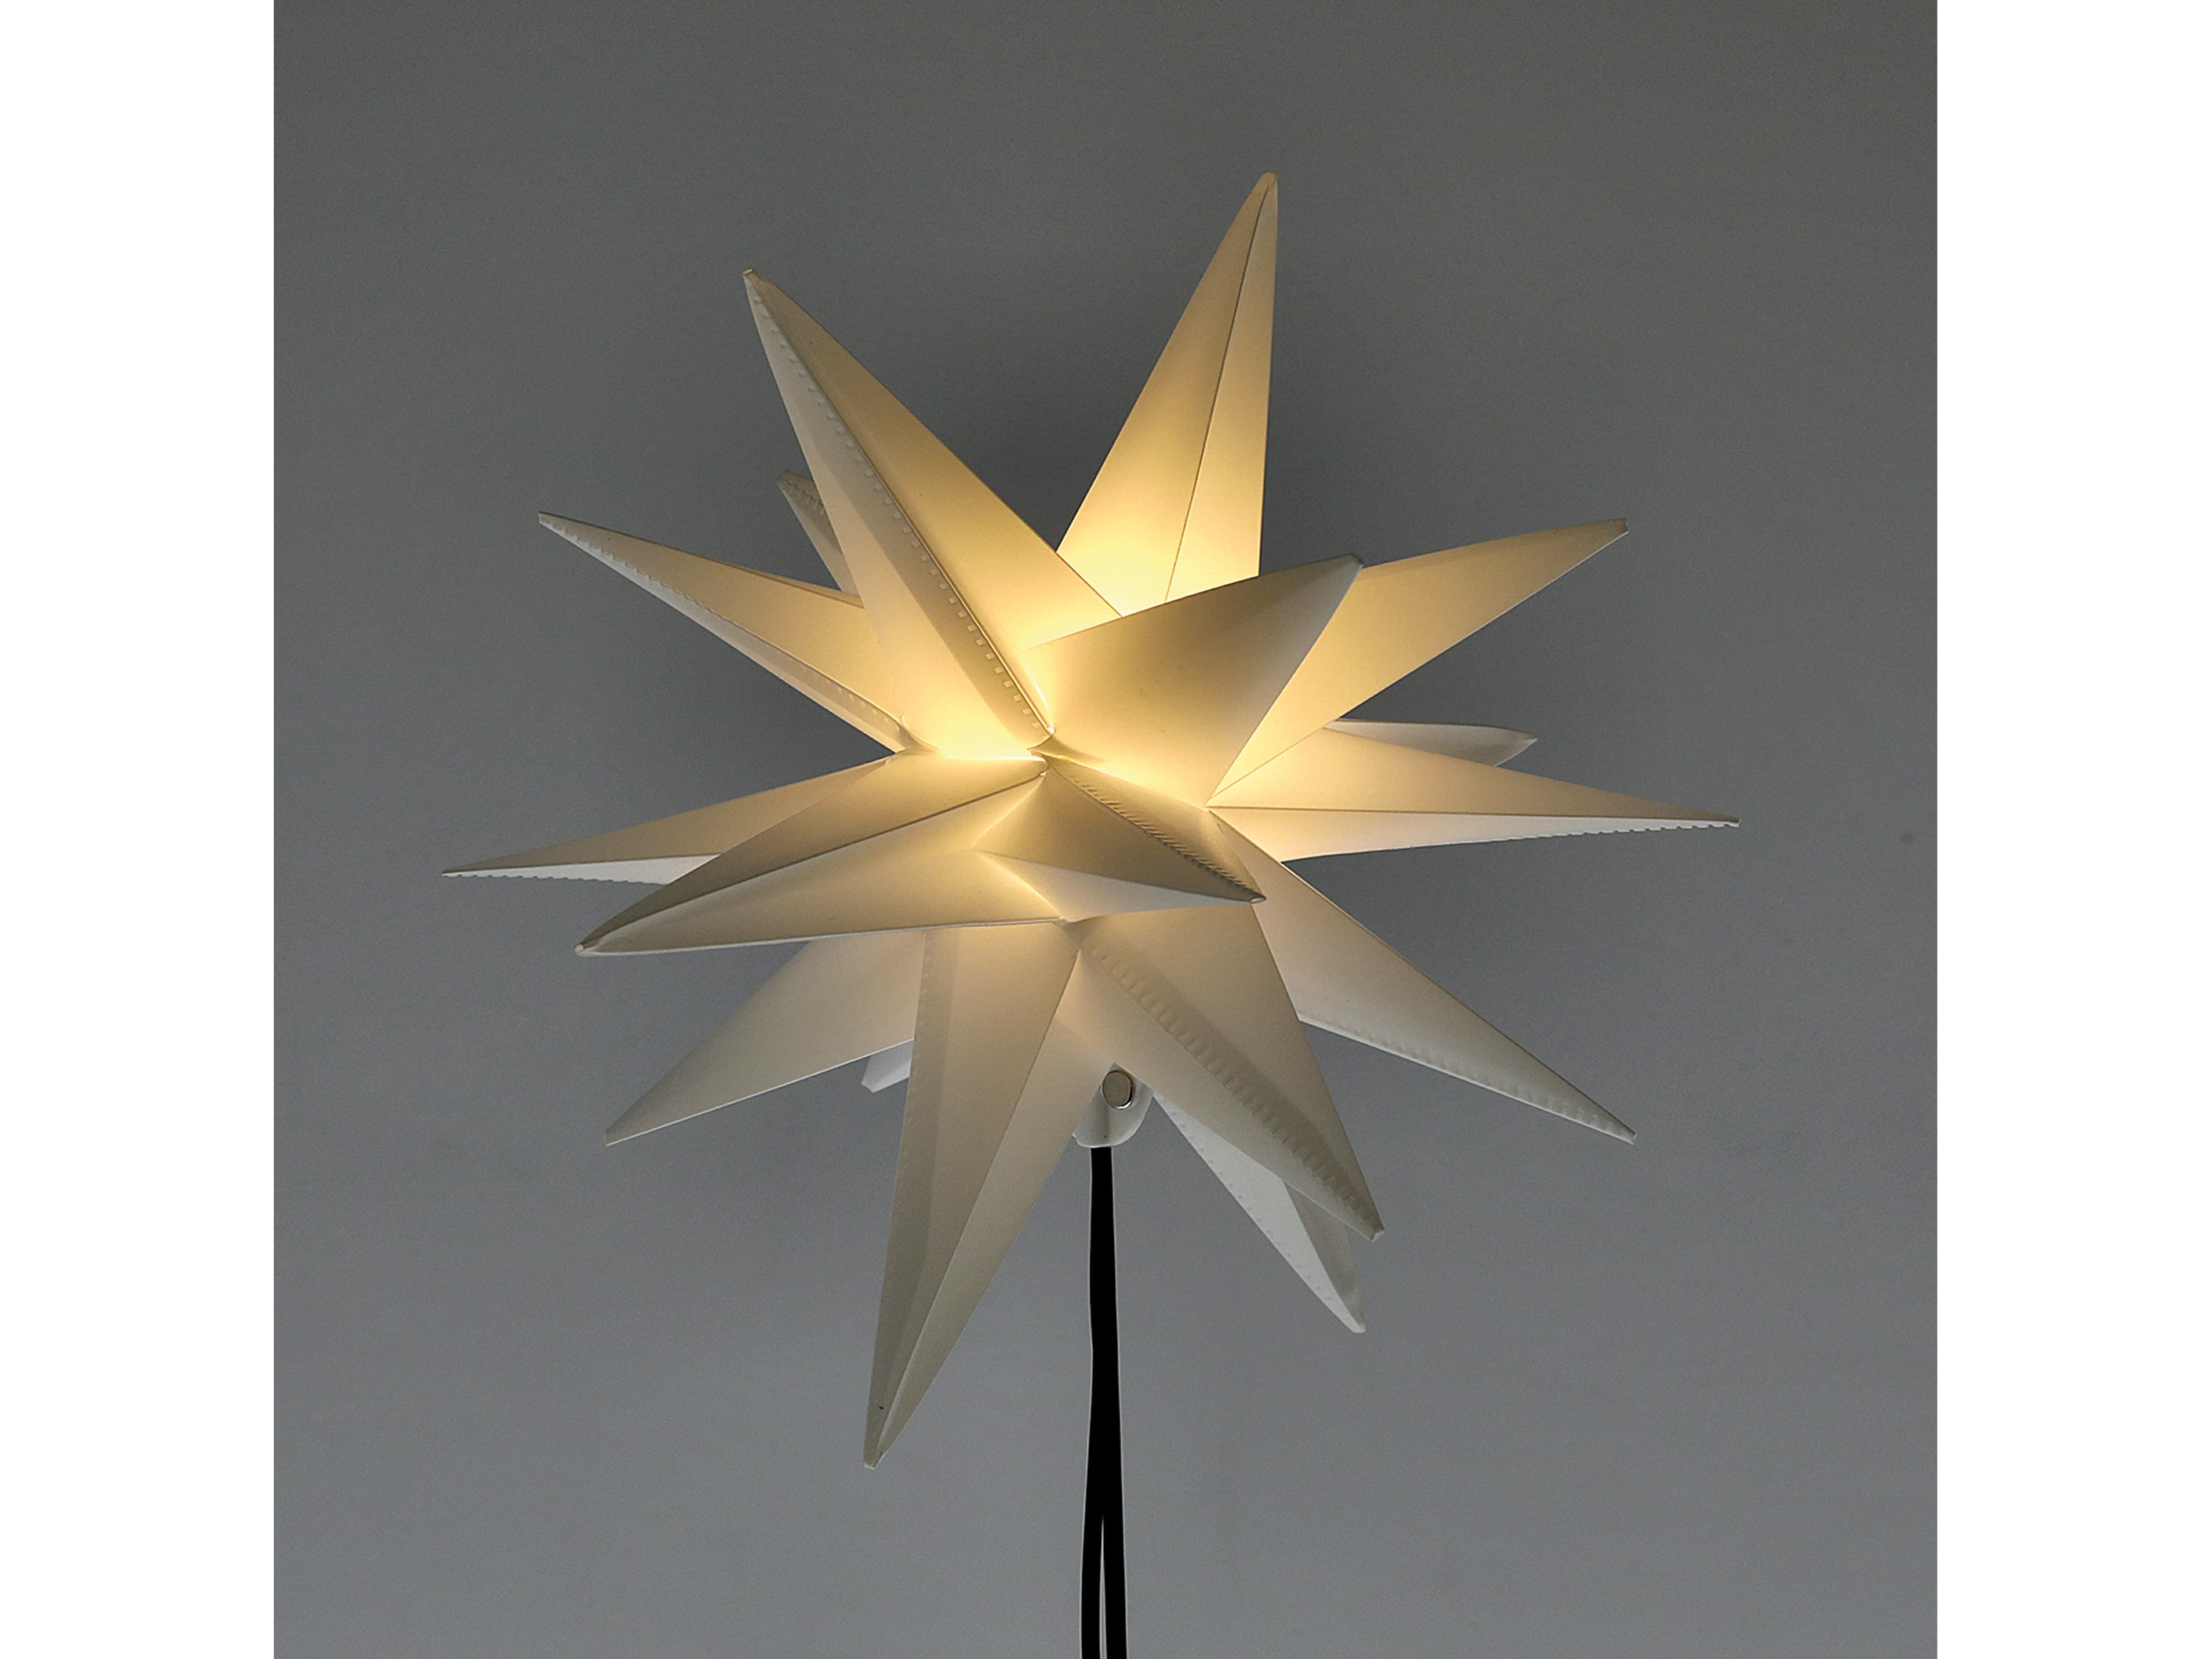 LED-Stern mit Stab, 1 LED, 25 cm, Outdoor, faltbar, weiß